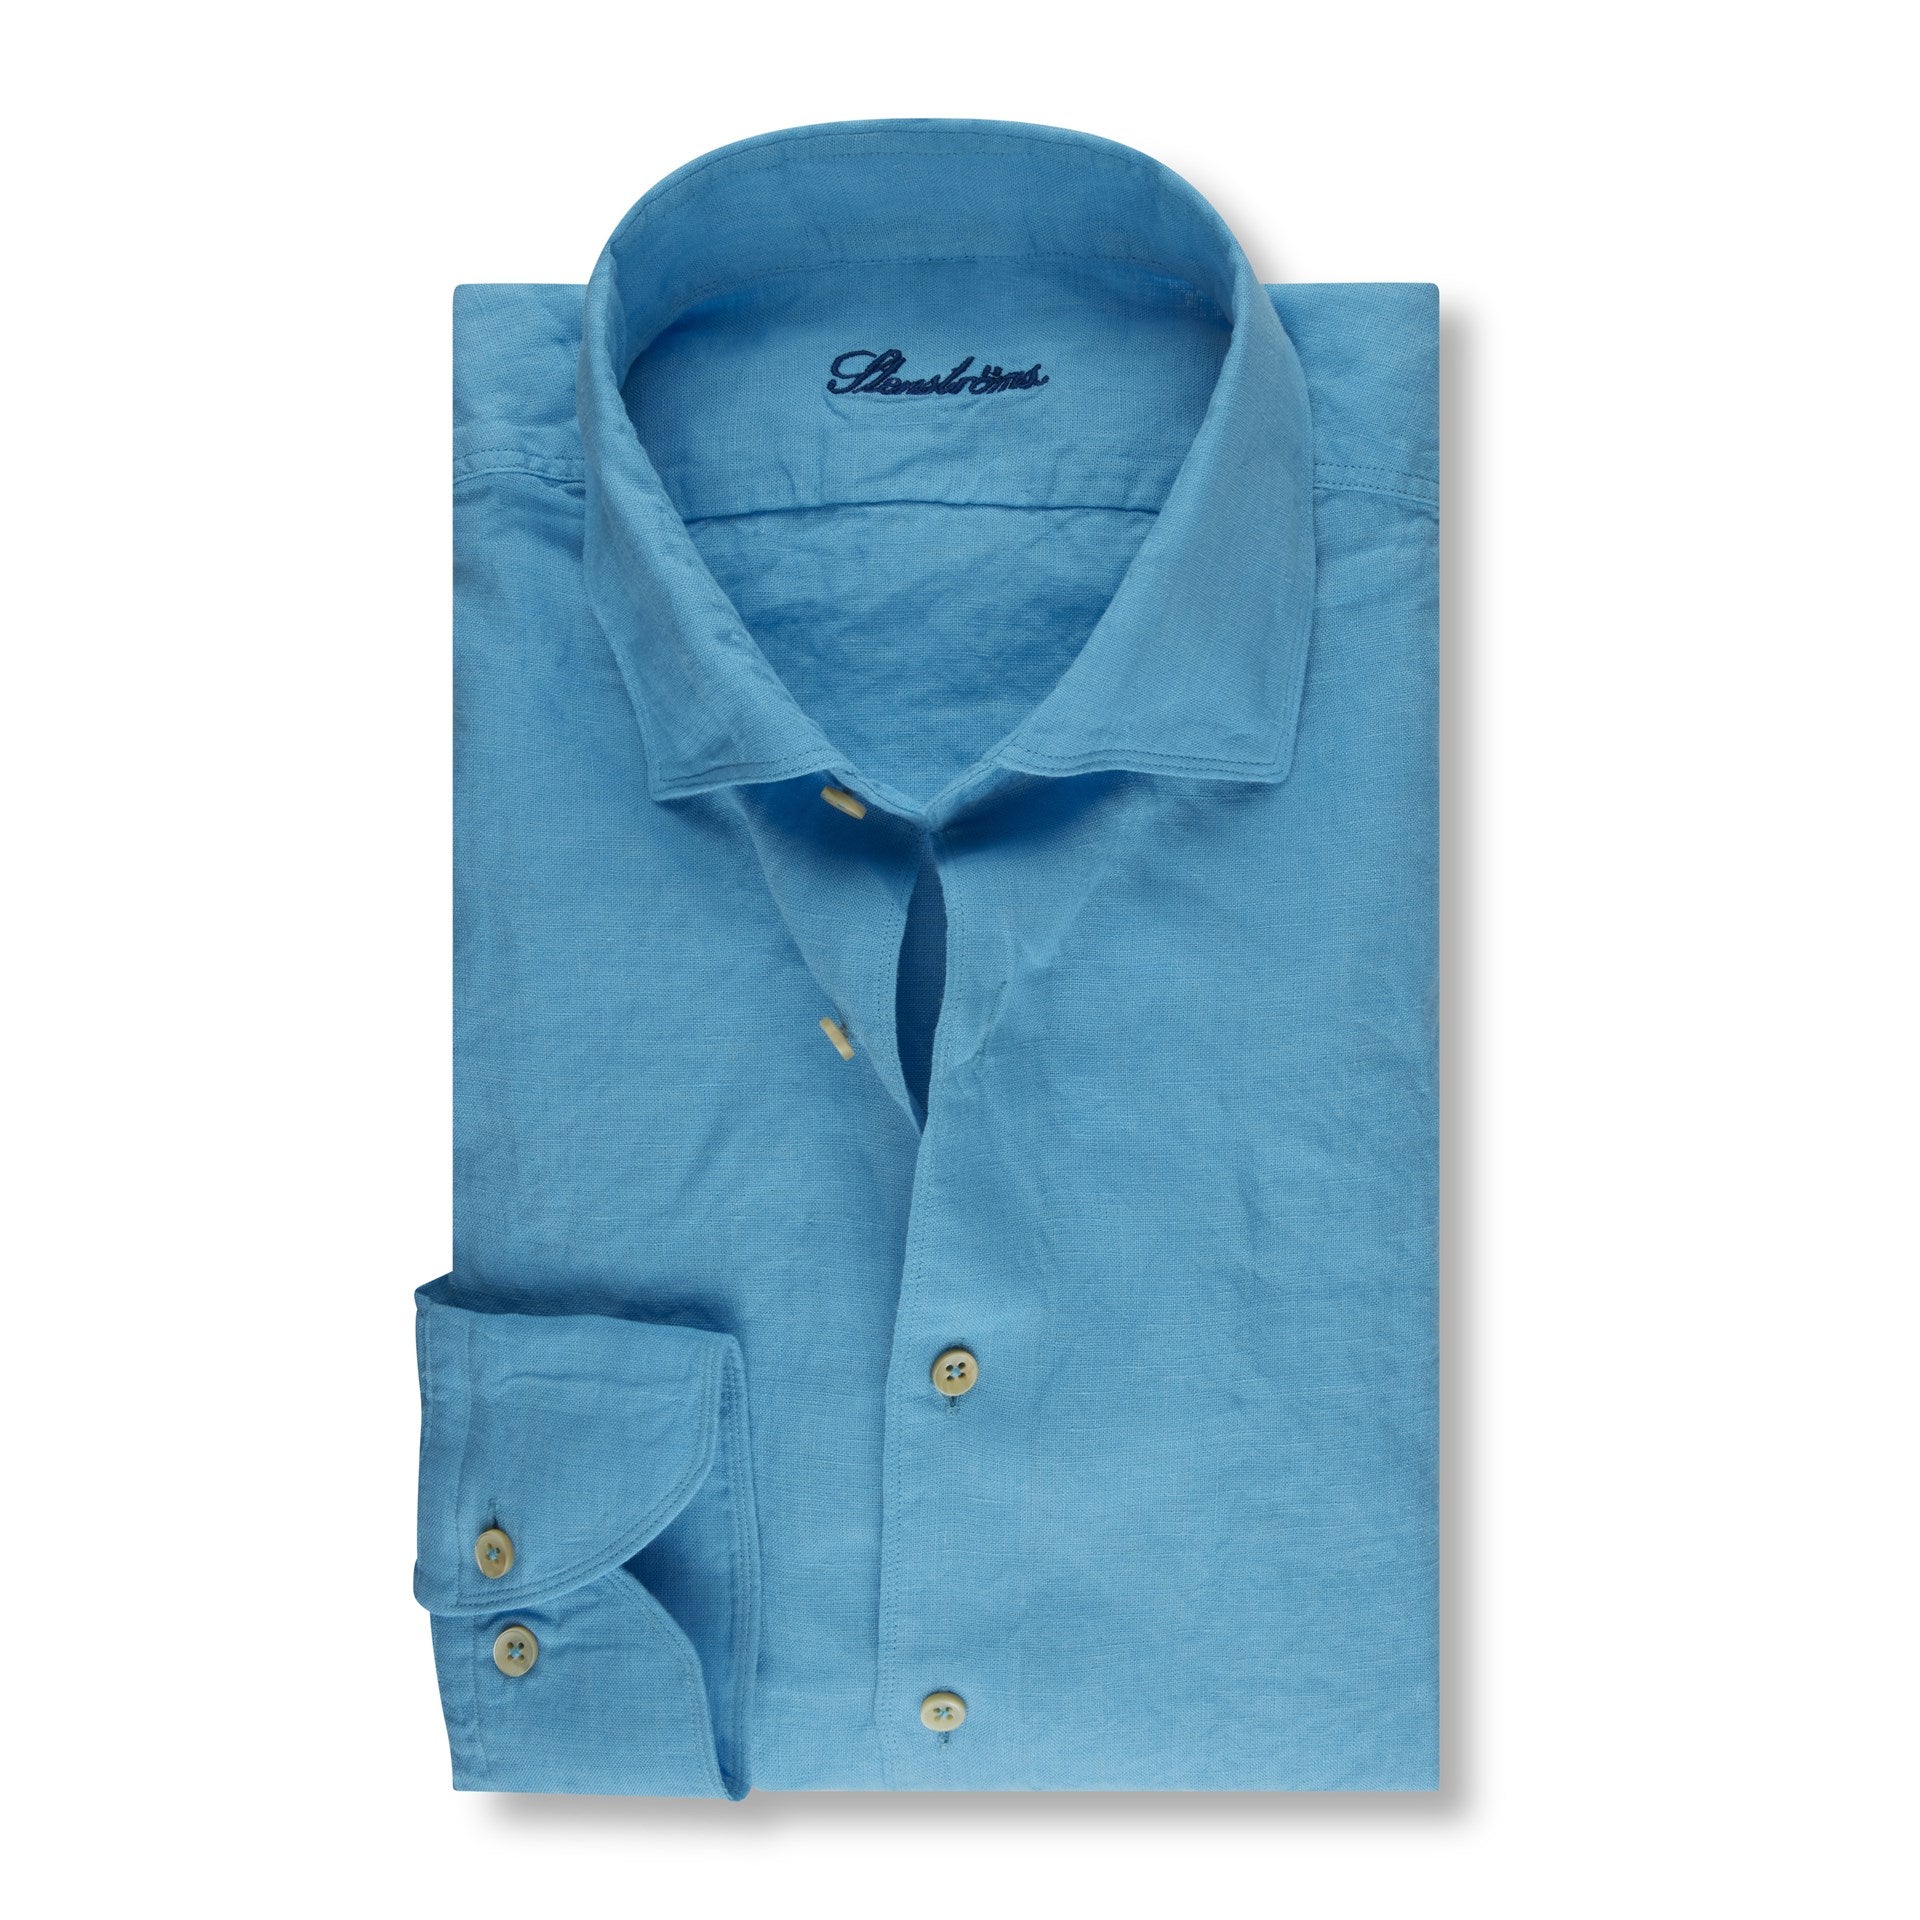 Stenstroms - Plain Linen Shirt